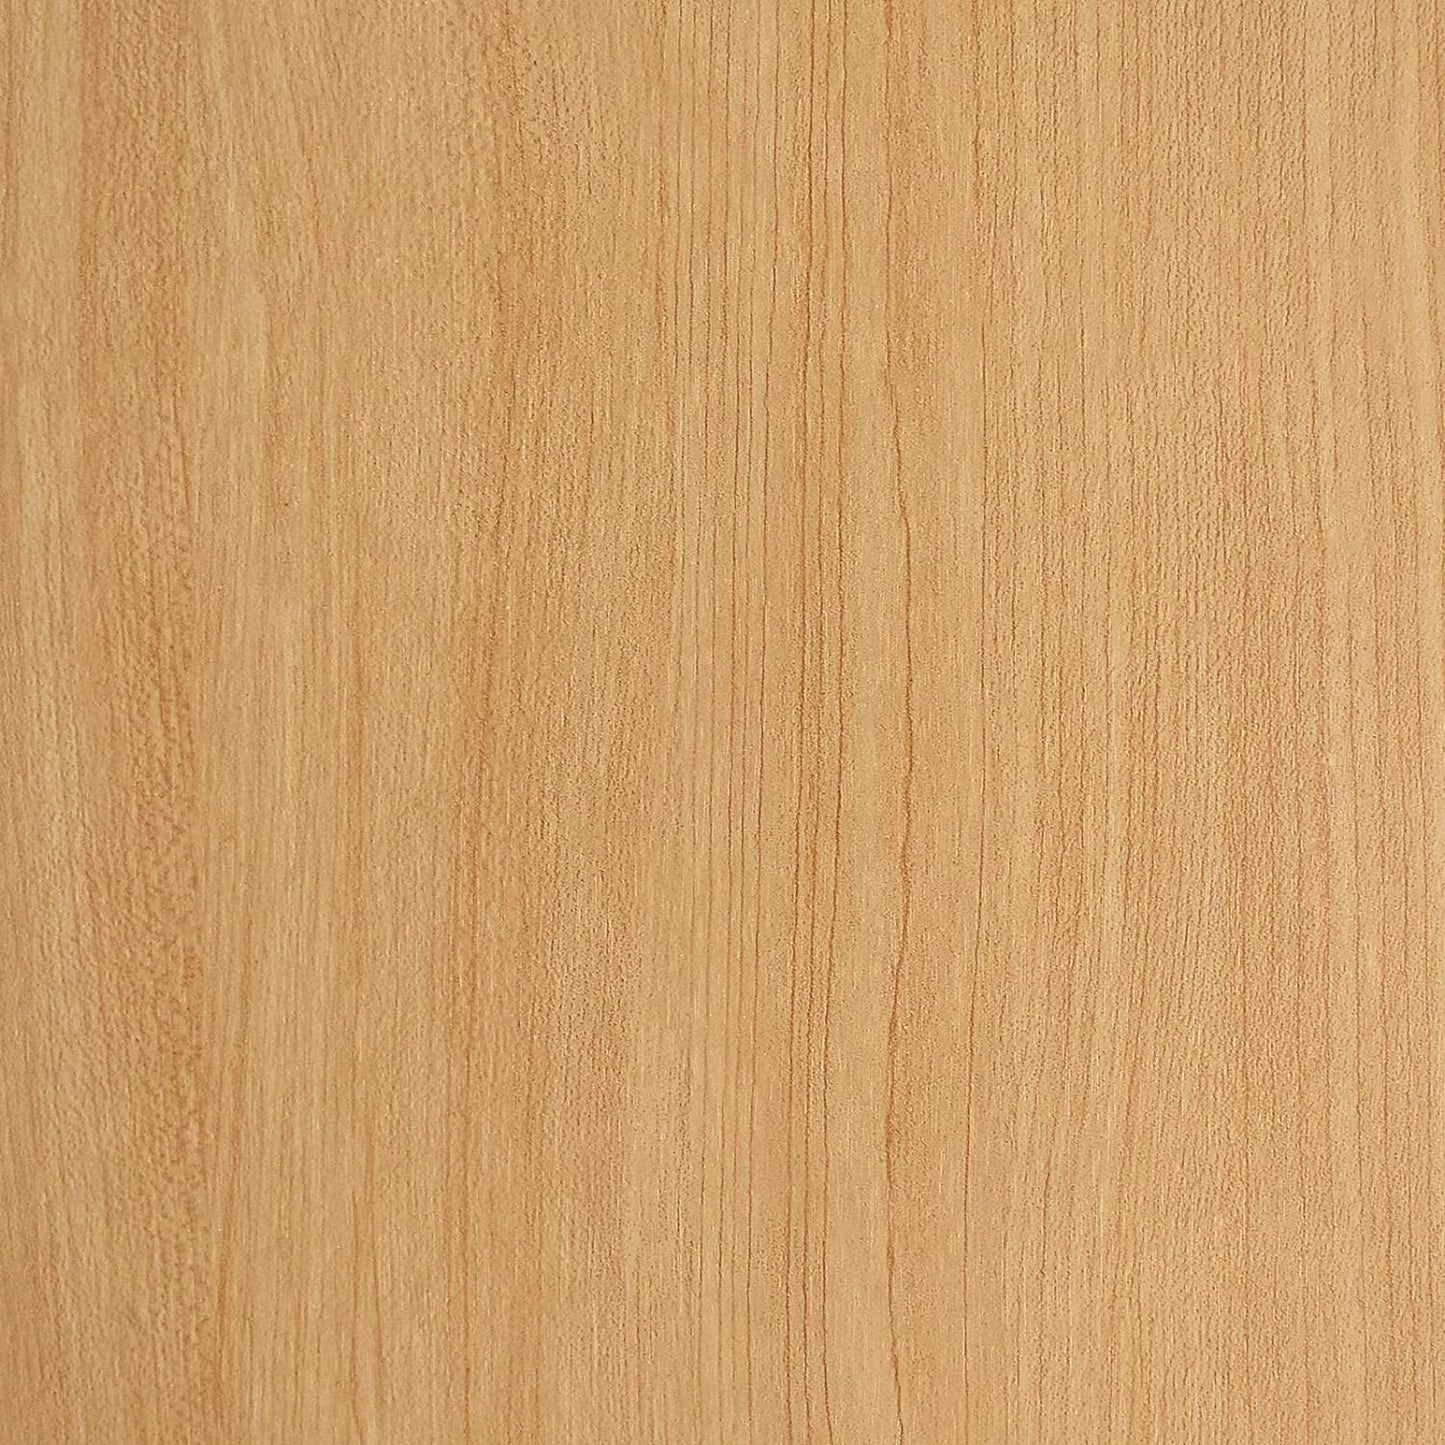 Papel de contacto de madera Papel tapiz de madera Papel tapiz despegable y adhesivo Papel de contacto de grano de madera claro para gabinetes Papel tapiz autoadhesivo Papel tapiz removible 17.7 × 118 pulgadas PET Fácil de instalar y limpiar